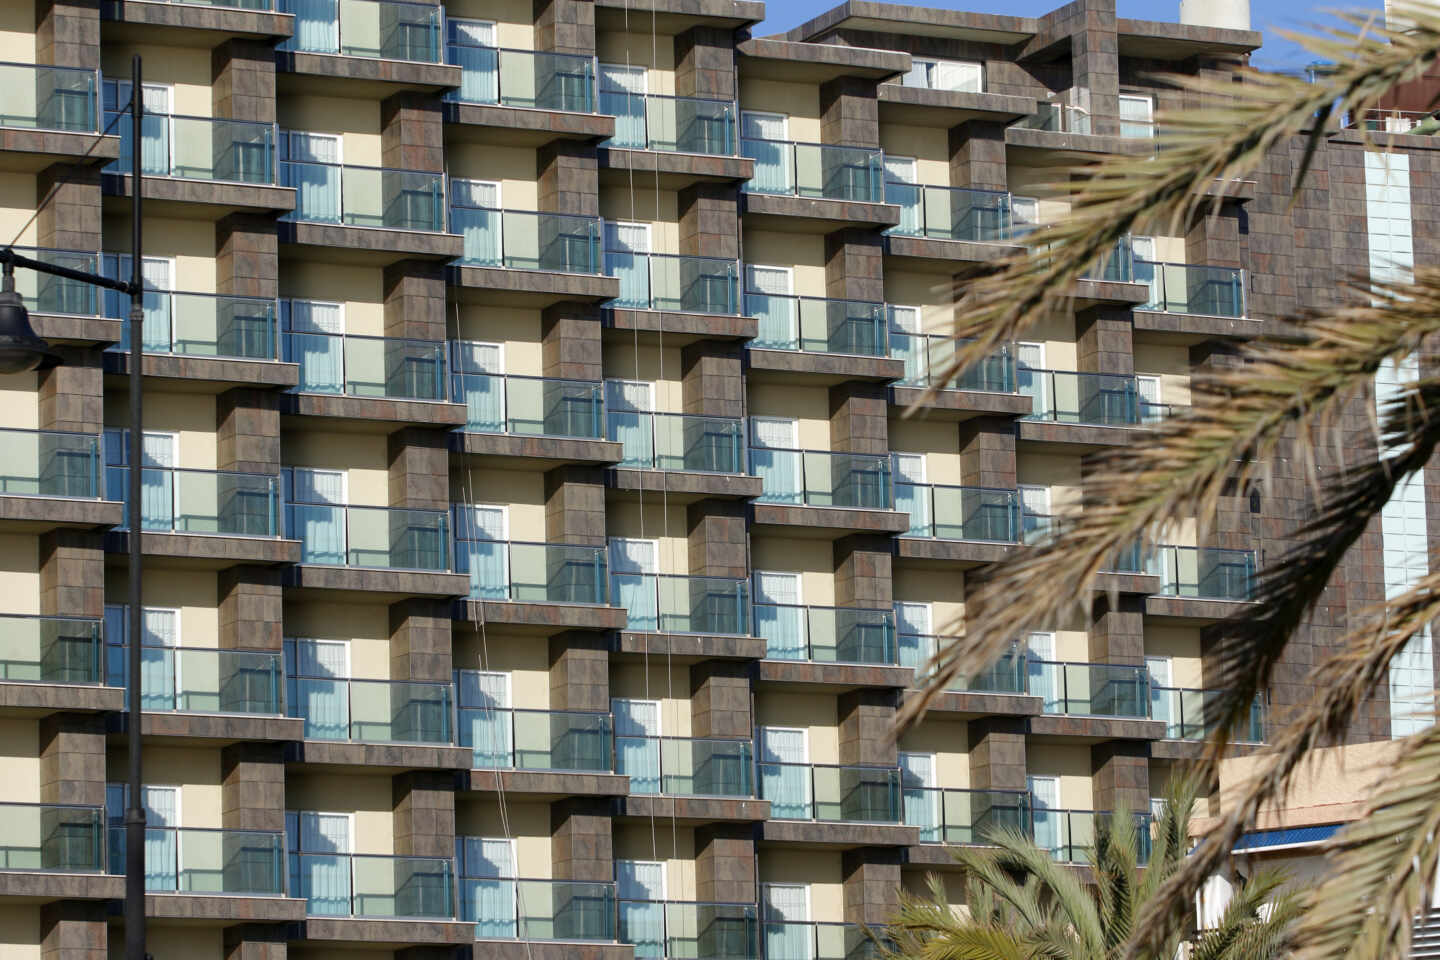 Hoteles en la playa Playamar, en Torremolinos, Málaga, cerrados durante el confinamiento decretado por el Estado de Alarma.